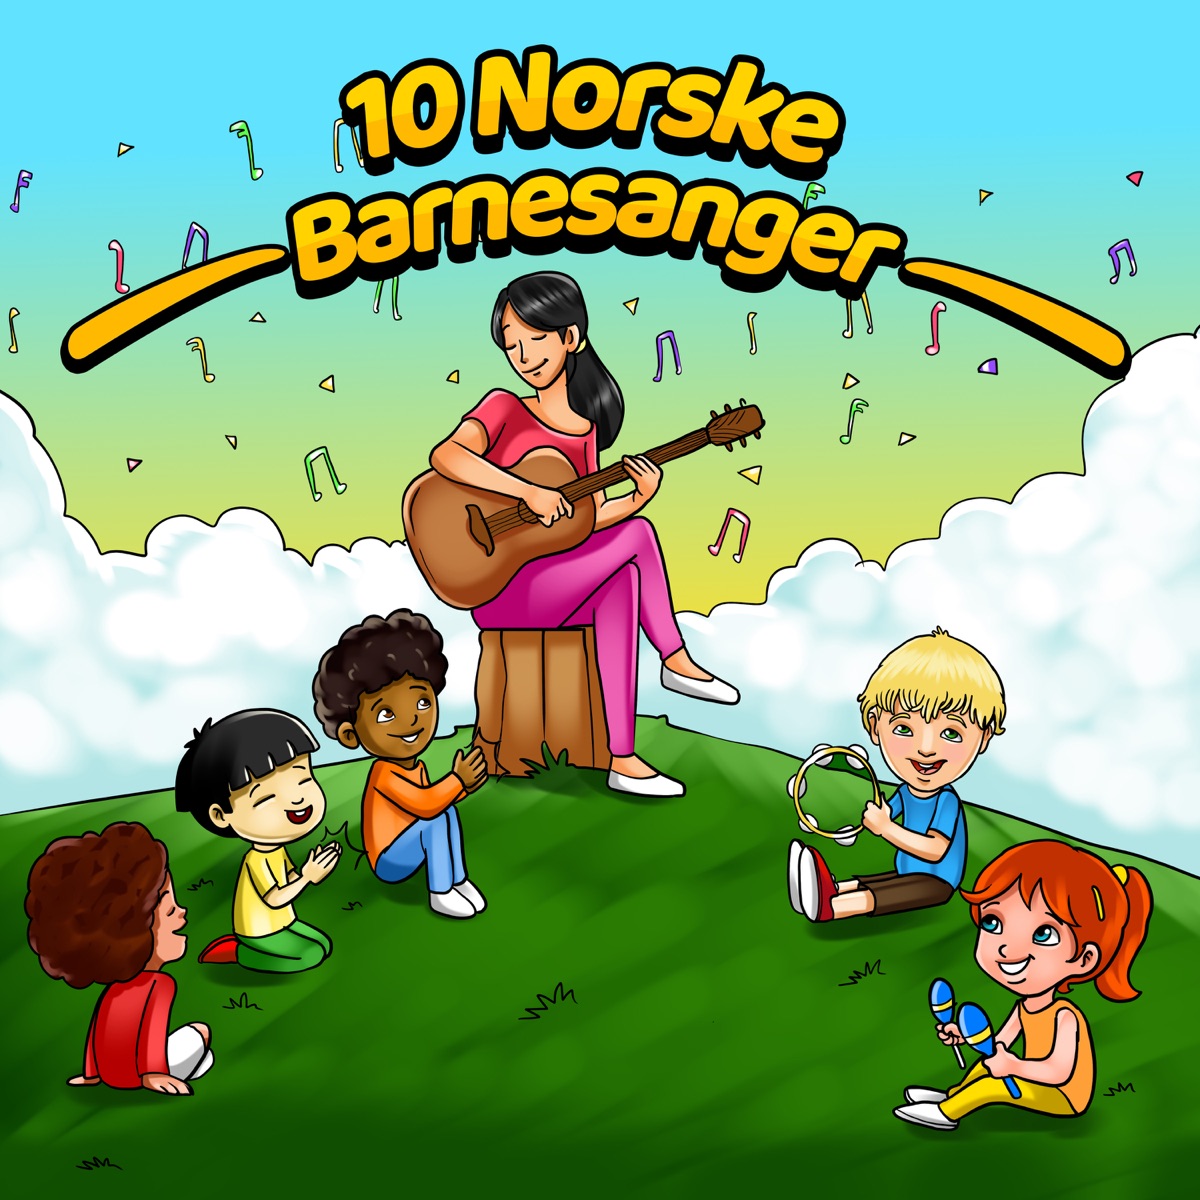 Topp 10 Norske Barnesanger by Storm Barnesanger on Apple Music